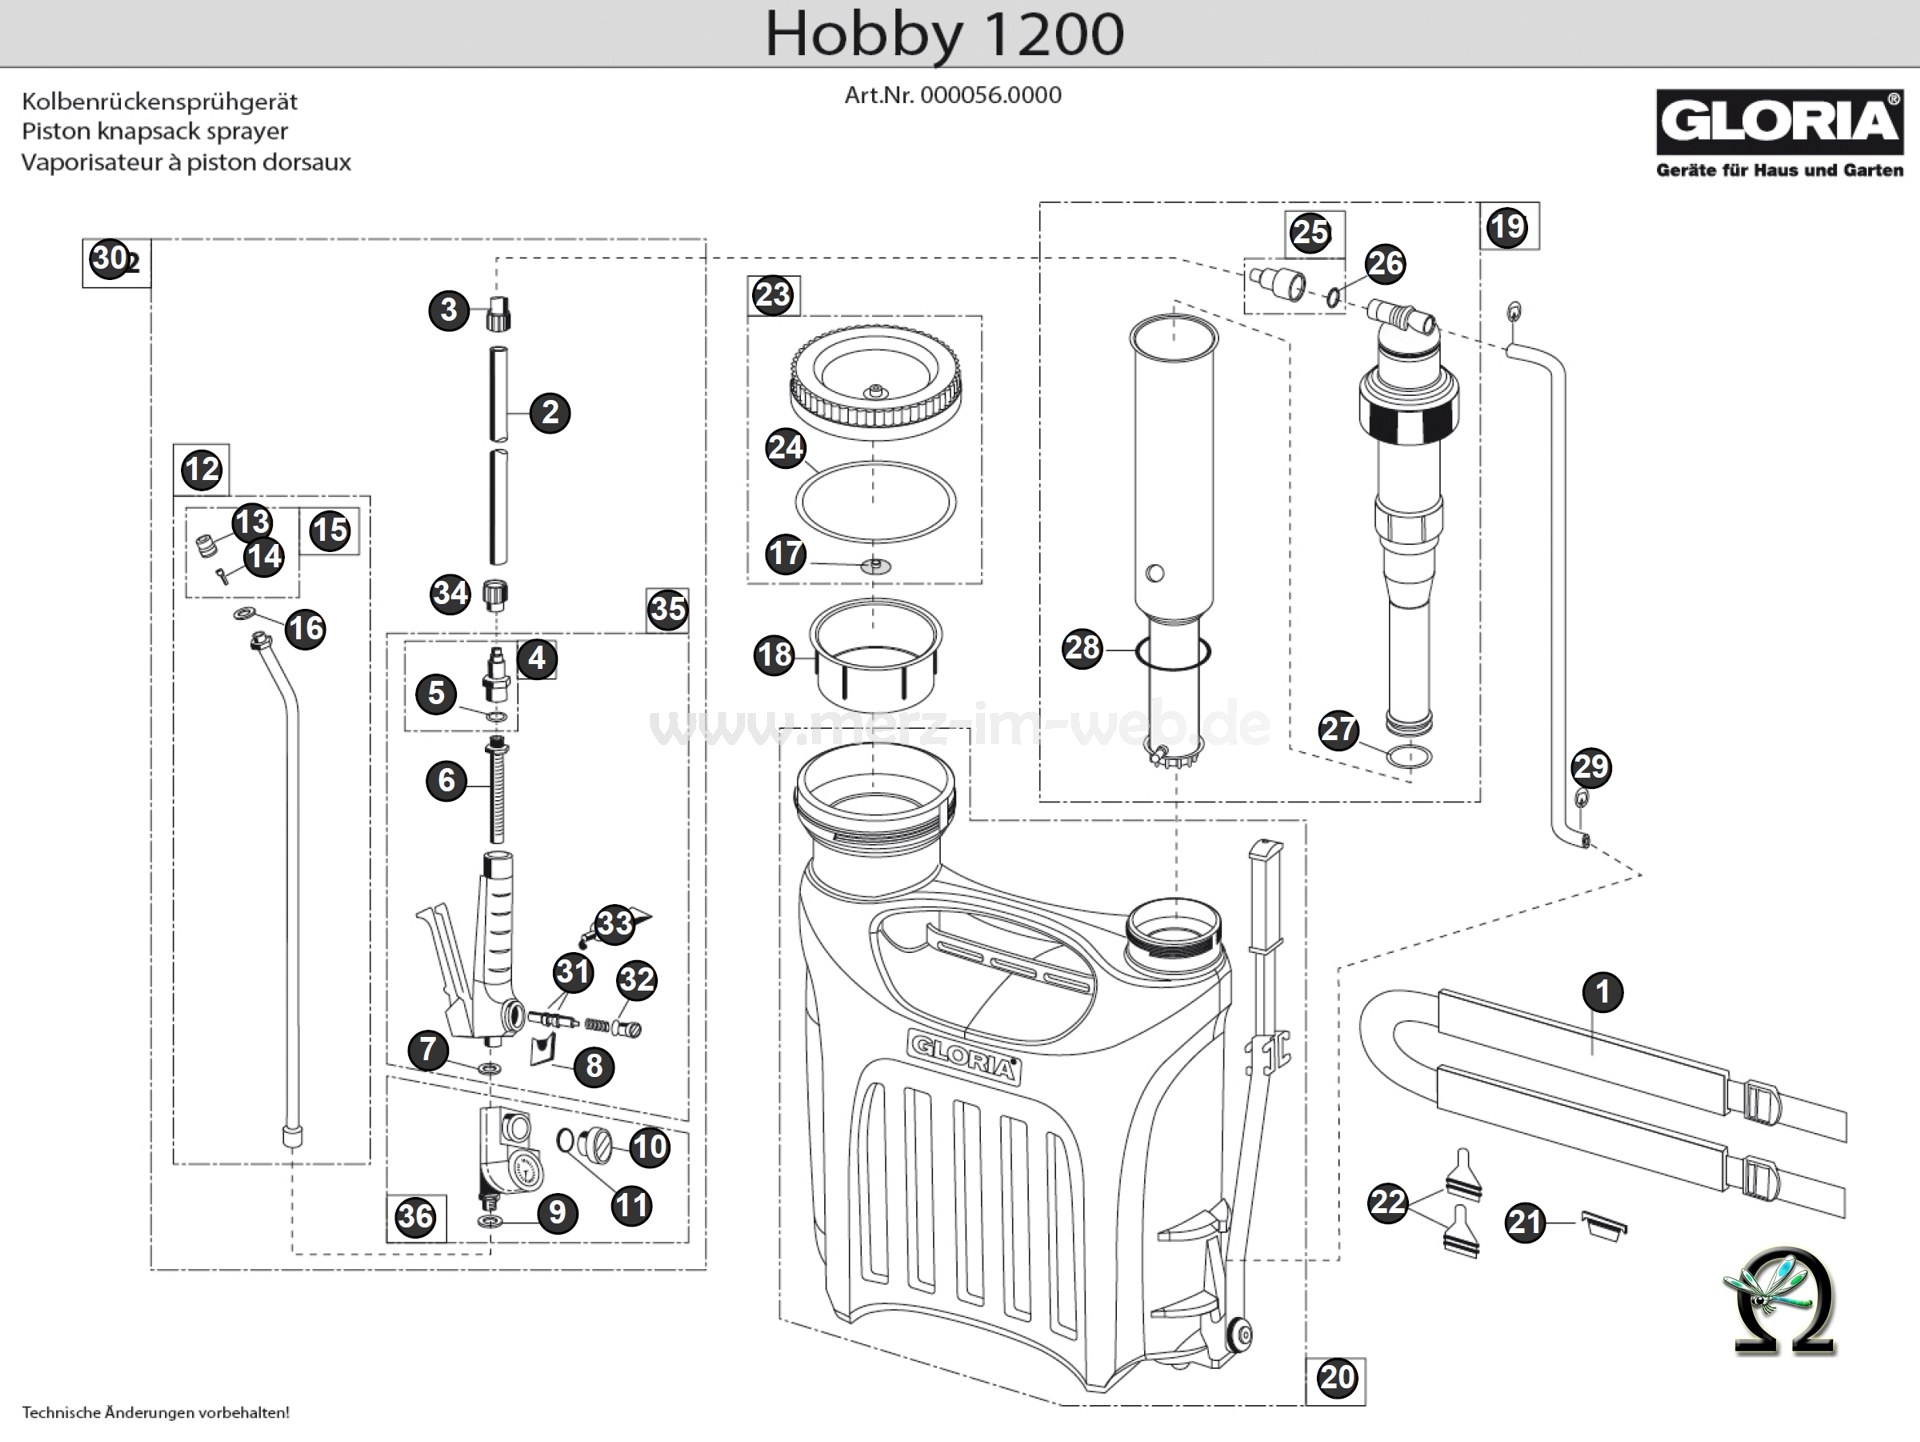 Gloria Kolbenrückensprühgerät Hobby 1200 Zeichnung der Einzelteile